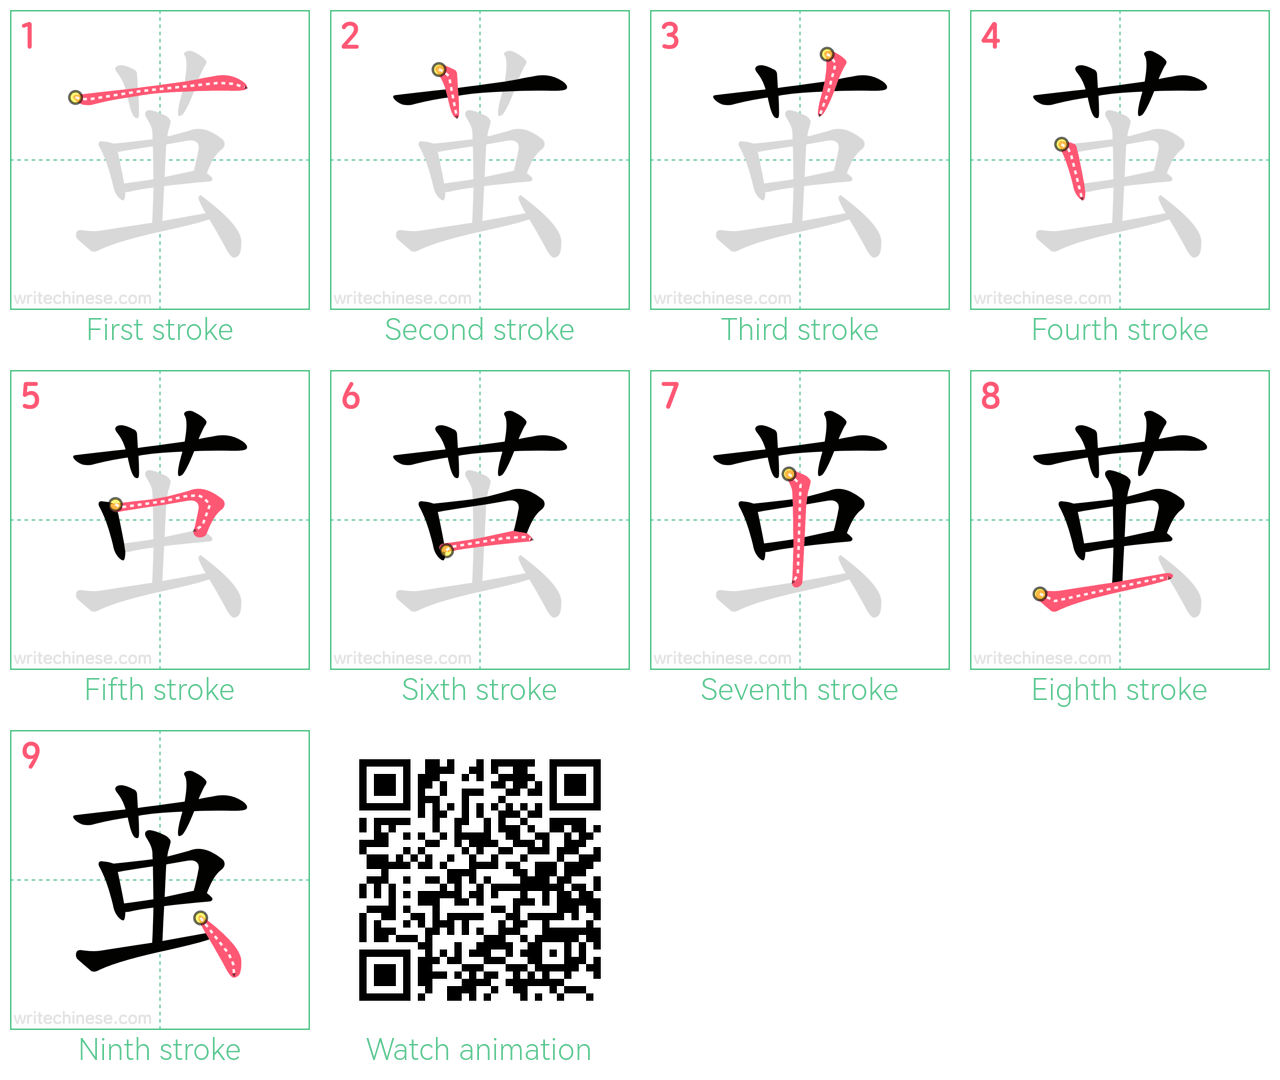 茧 step-by-step stroke order diagrams